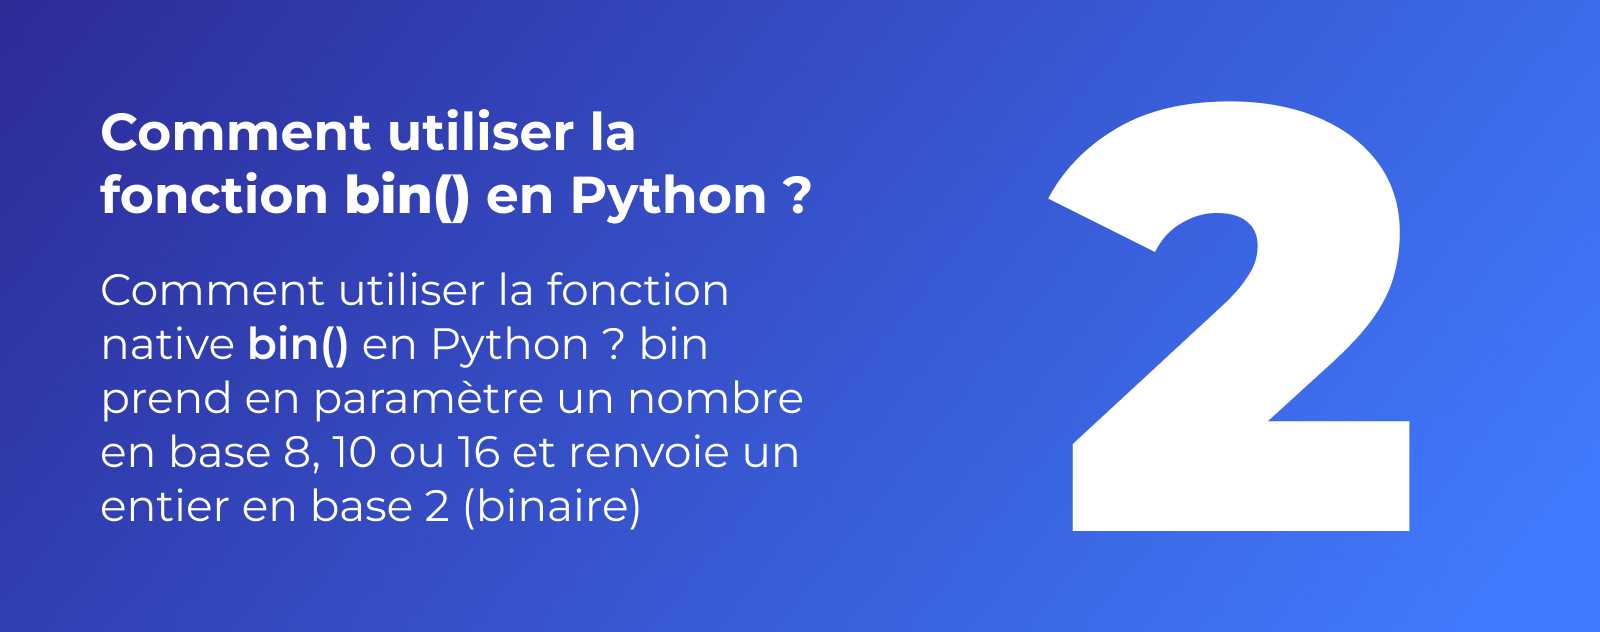 La fonction bin en Python